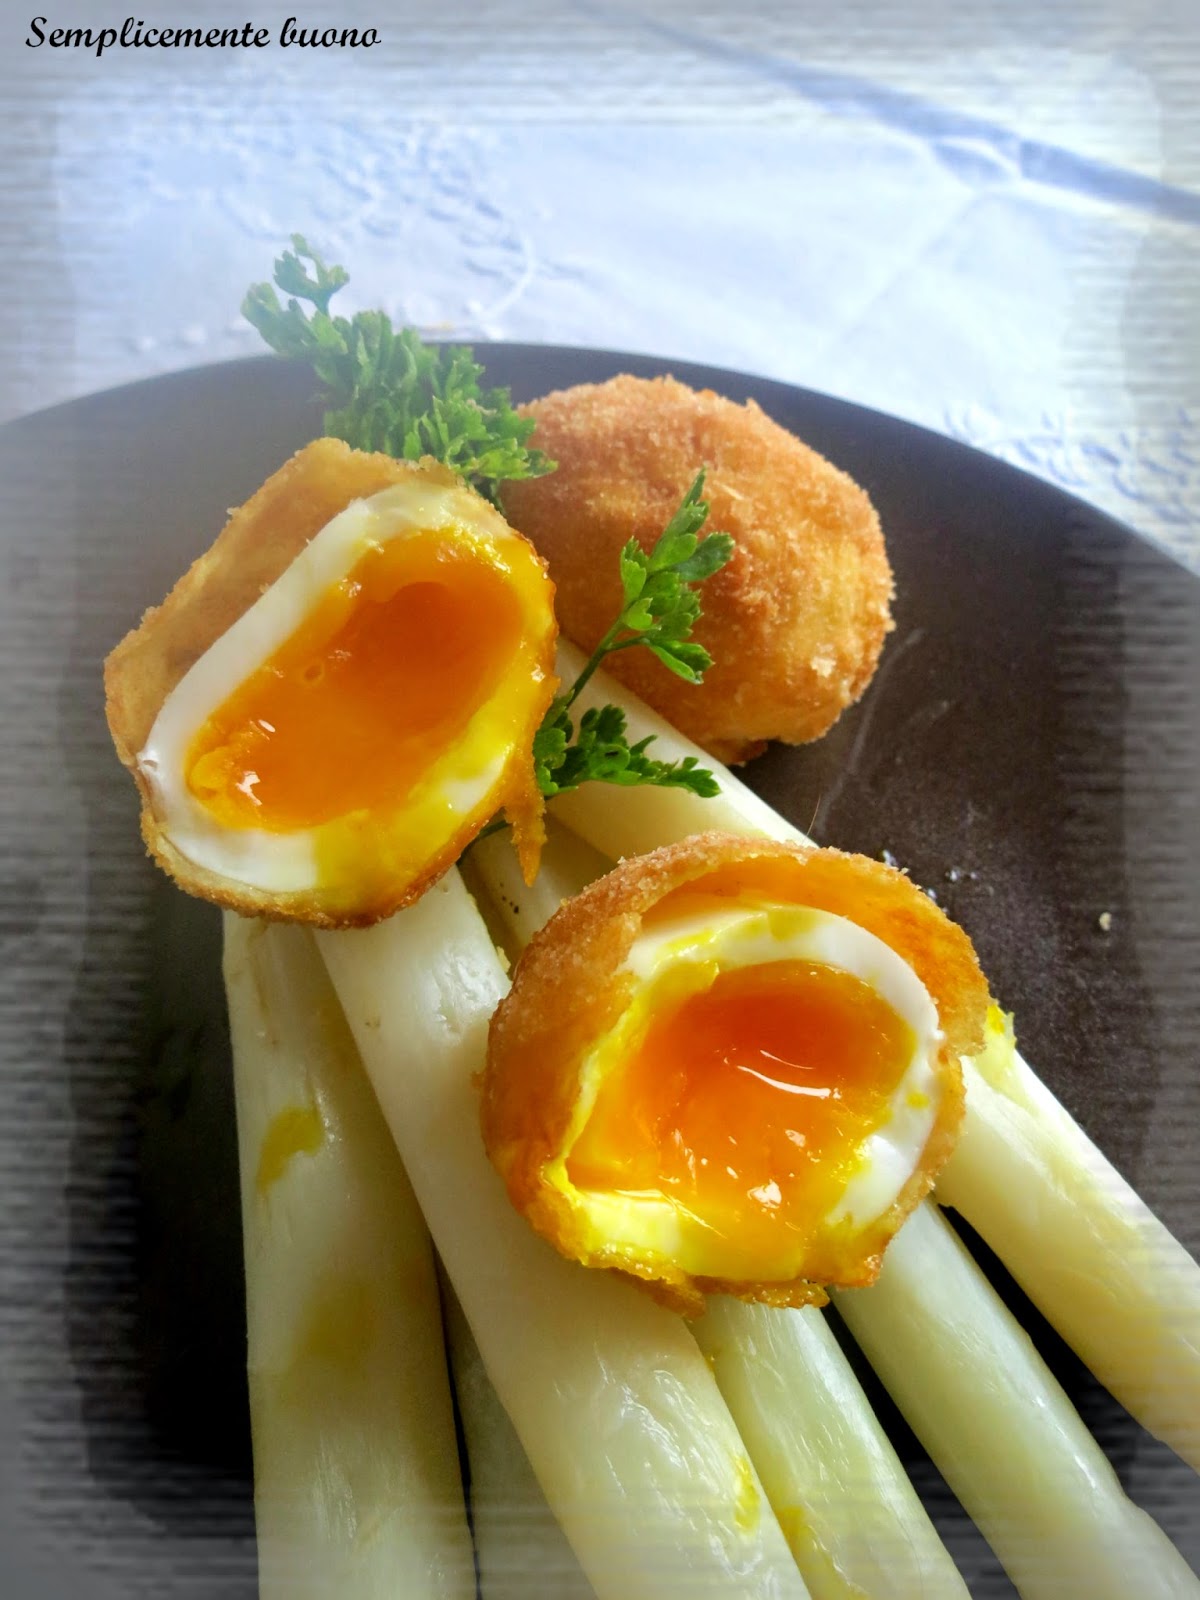 uovo fritto con asparagi bianchi di bassano dop